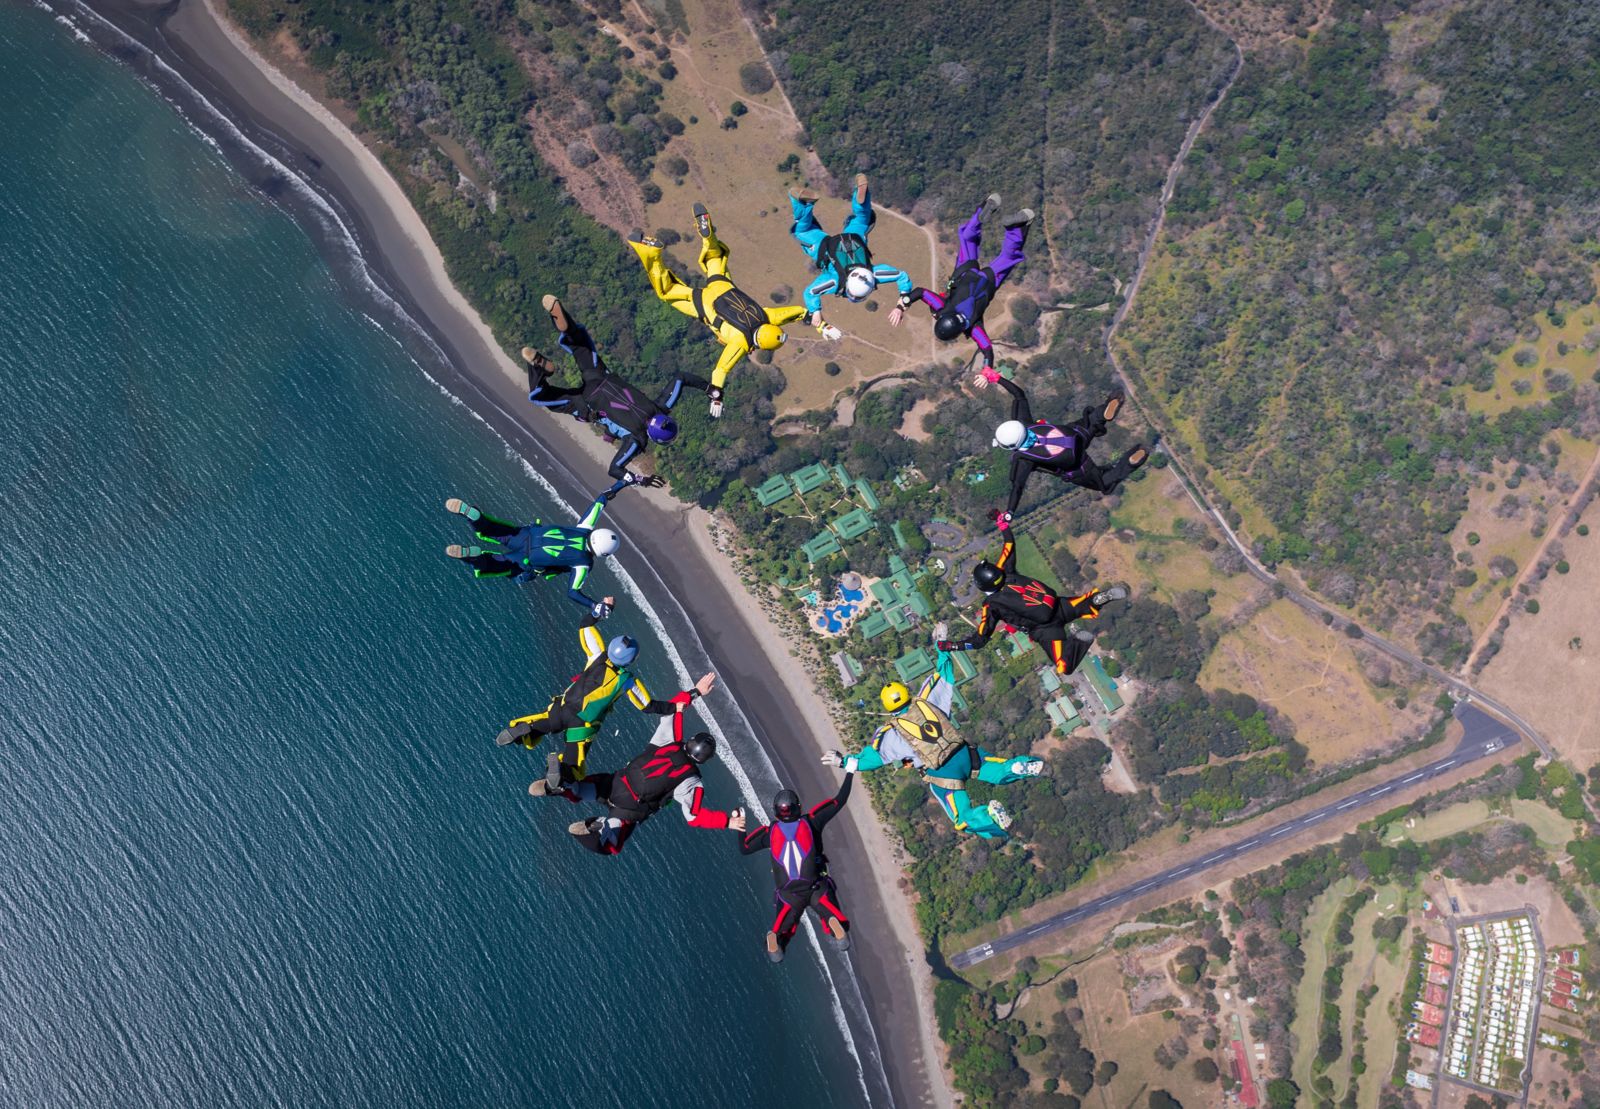 Acrobacias en paracaídas atrapan la atención en Playa Tambor